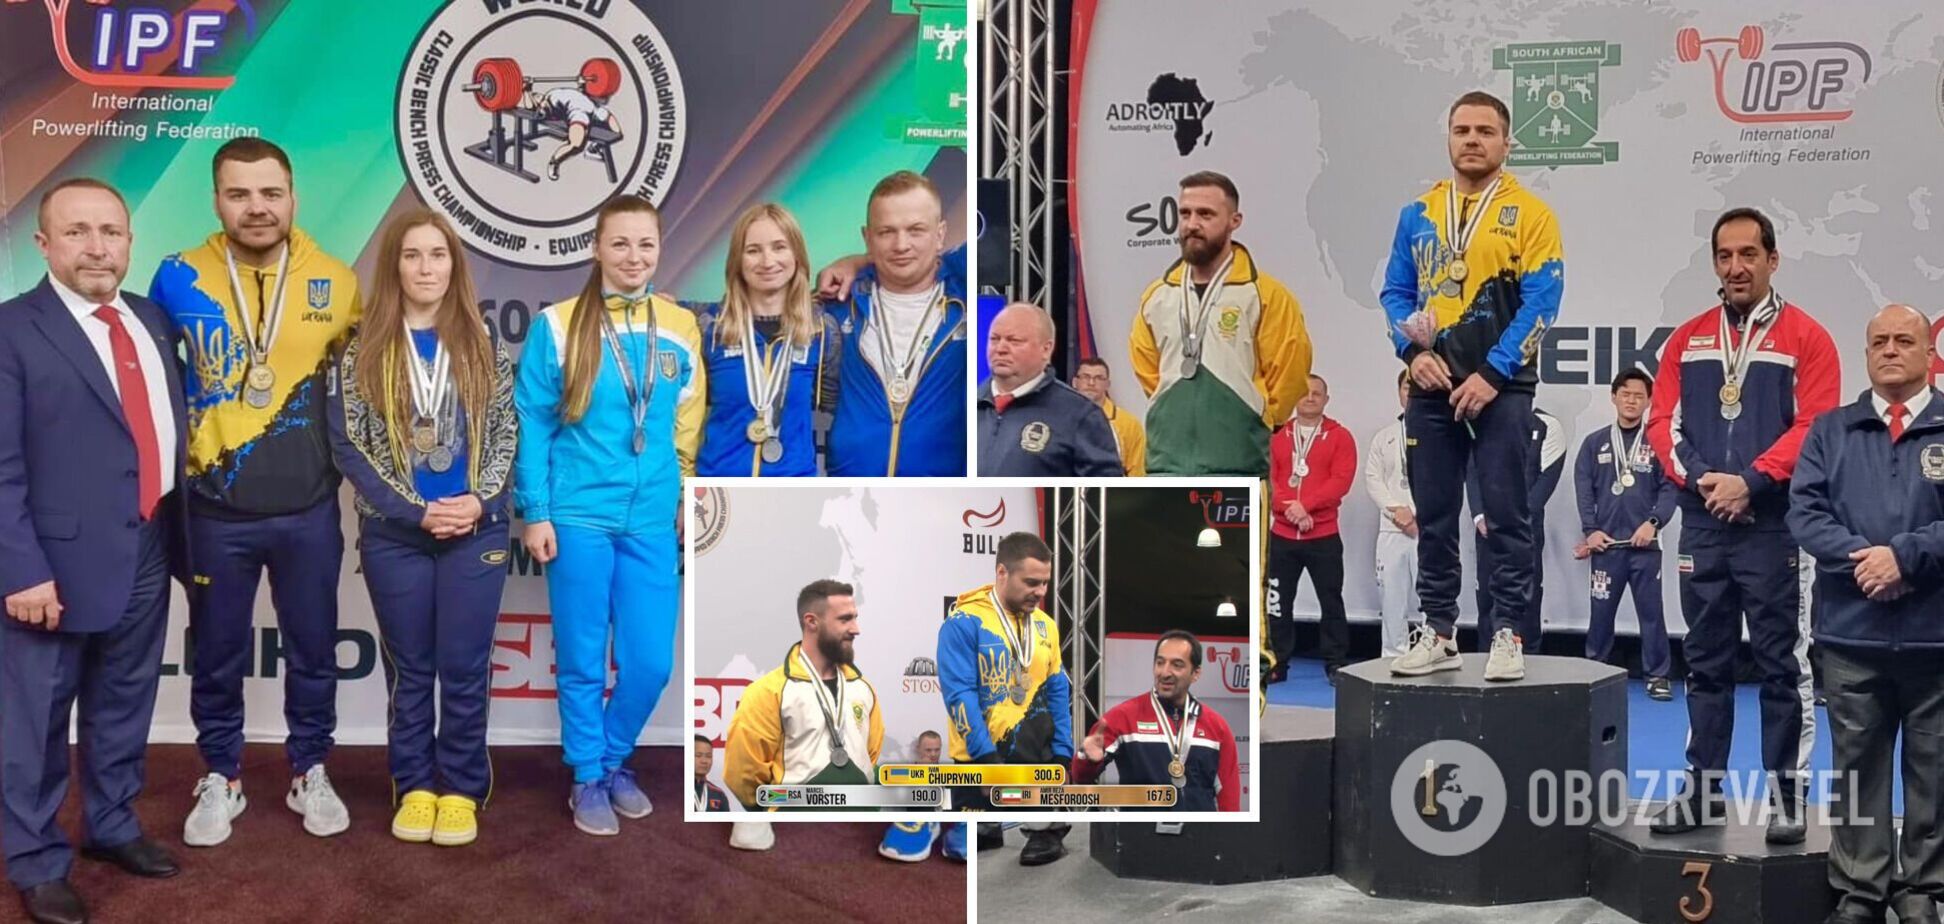 Украинский абсолютный чемпион мира отказался пожимать руку сопернику из Ирана. Момент попал на видео